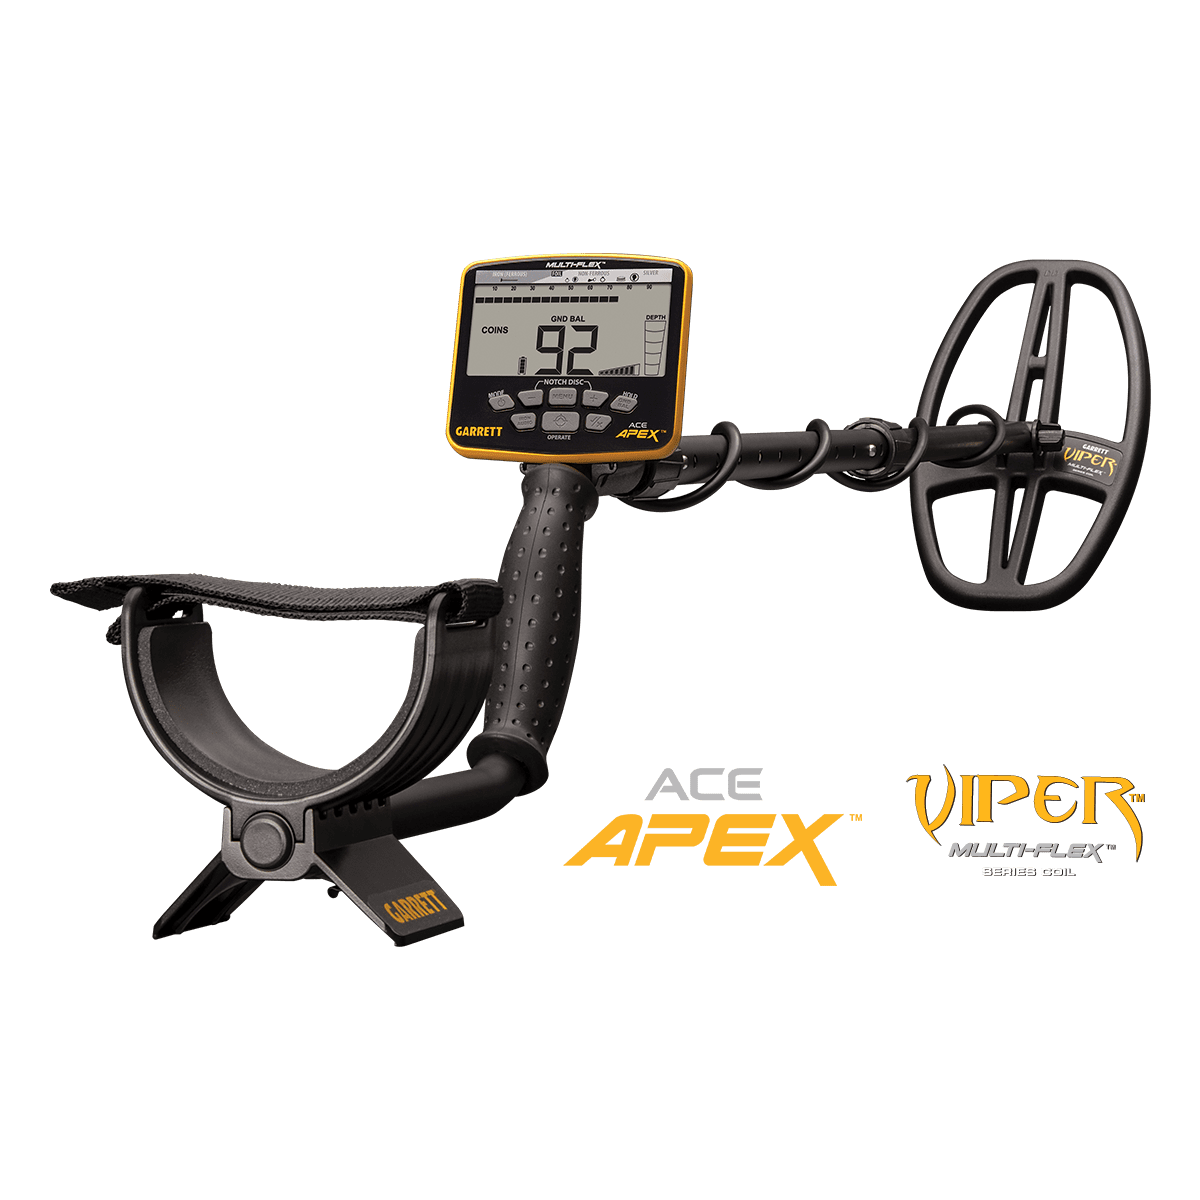 Garrett Ace Apex - Le détecteur de métaux nouvelle génération 2020